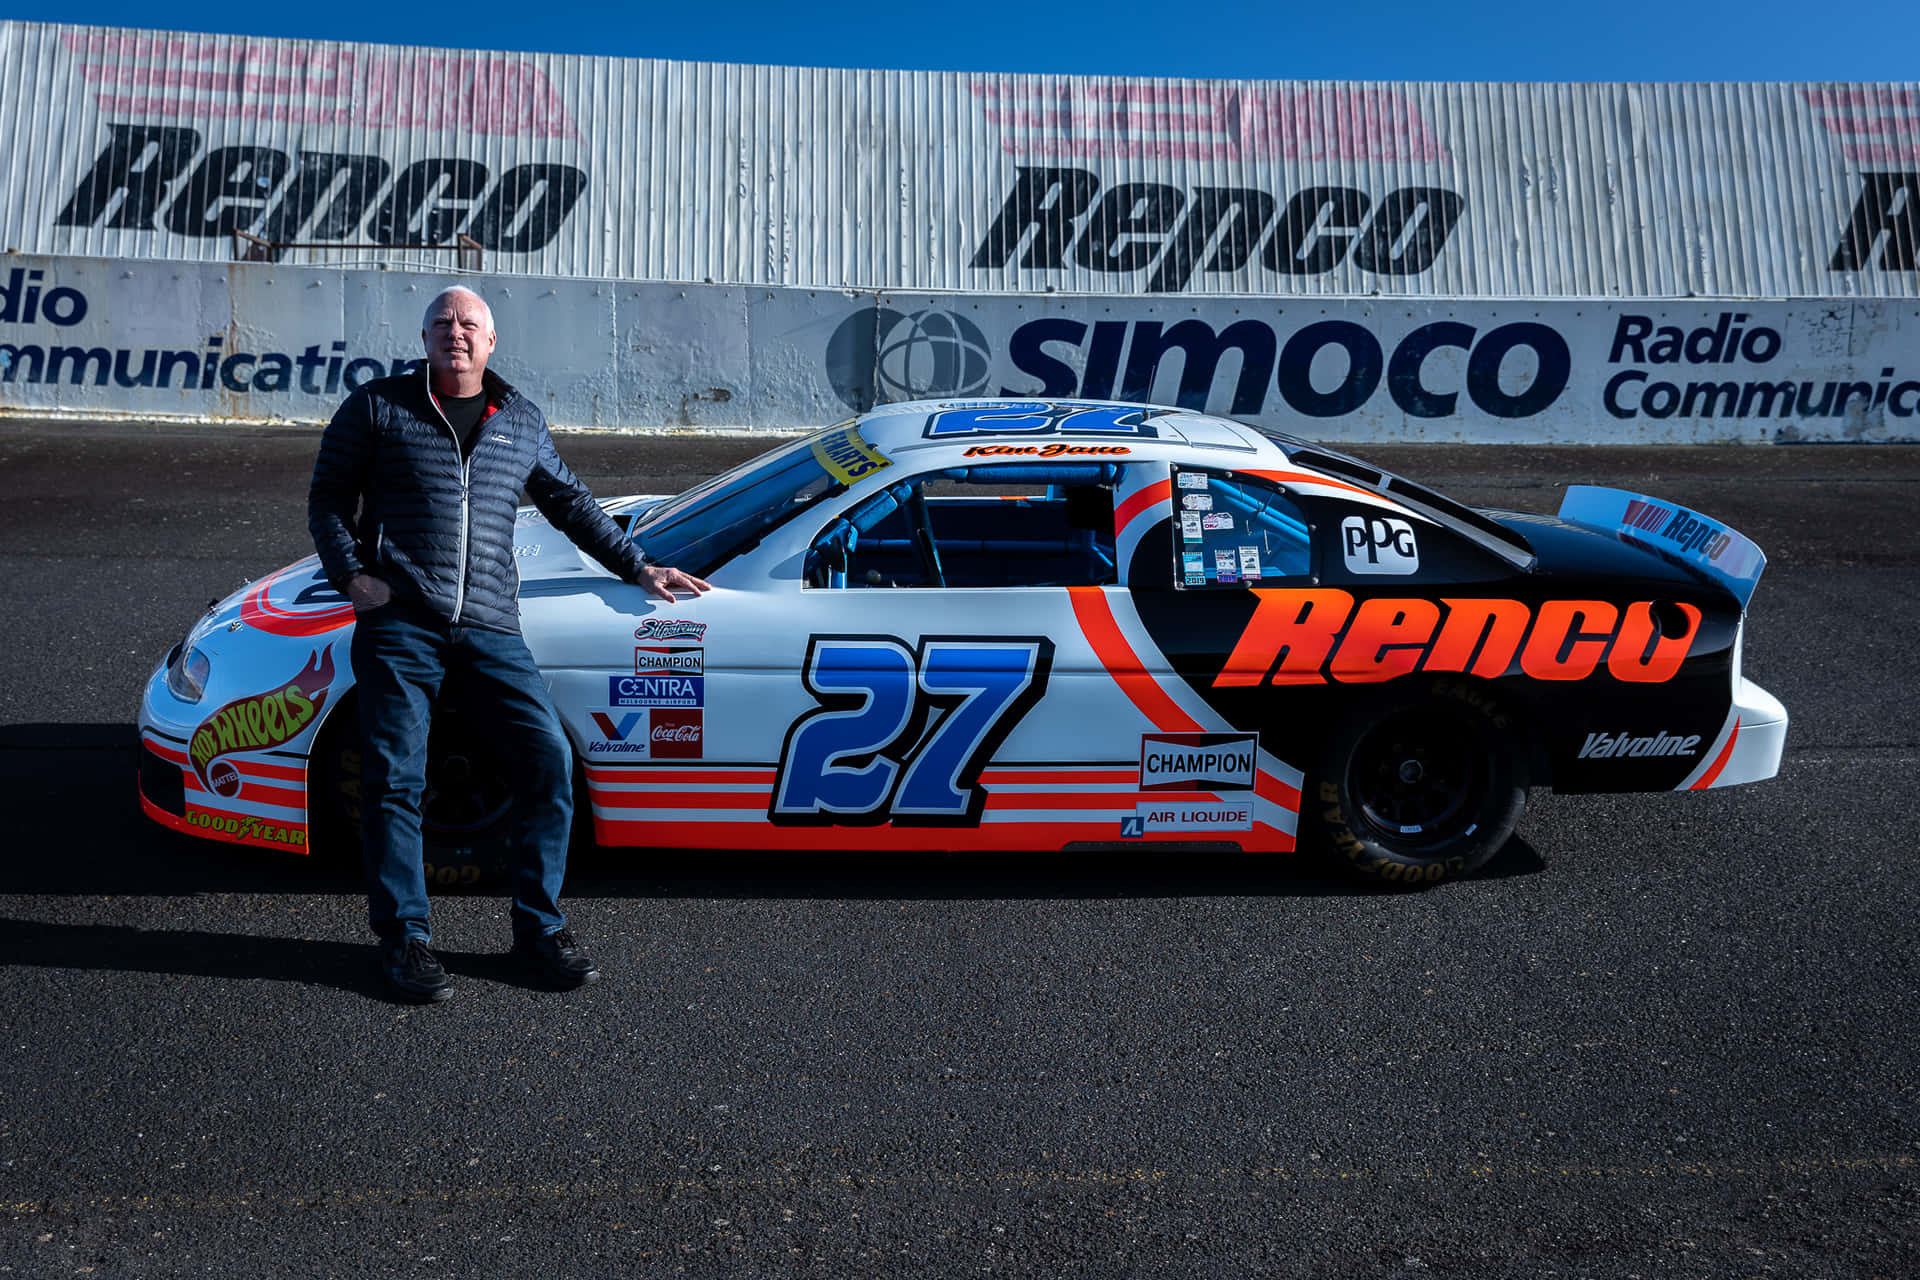 A Man Standing Next To A Race Car